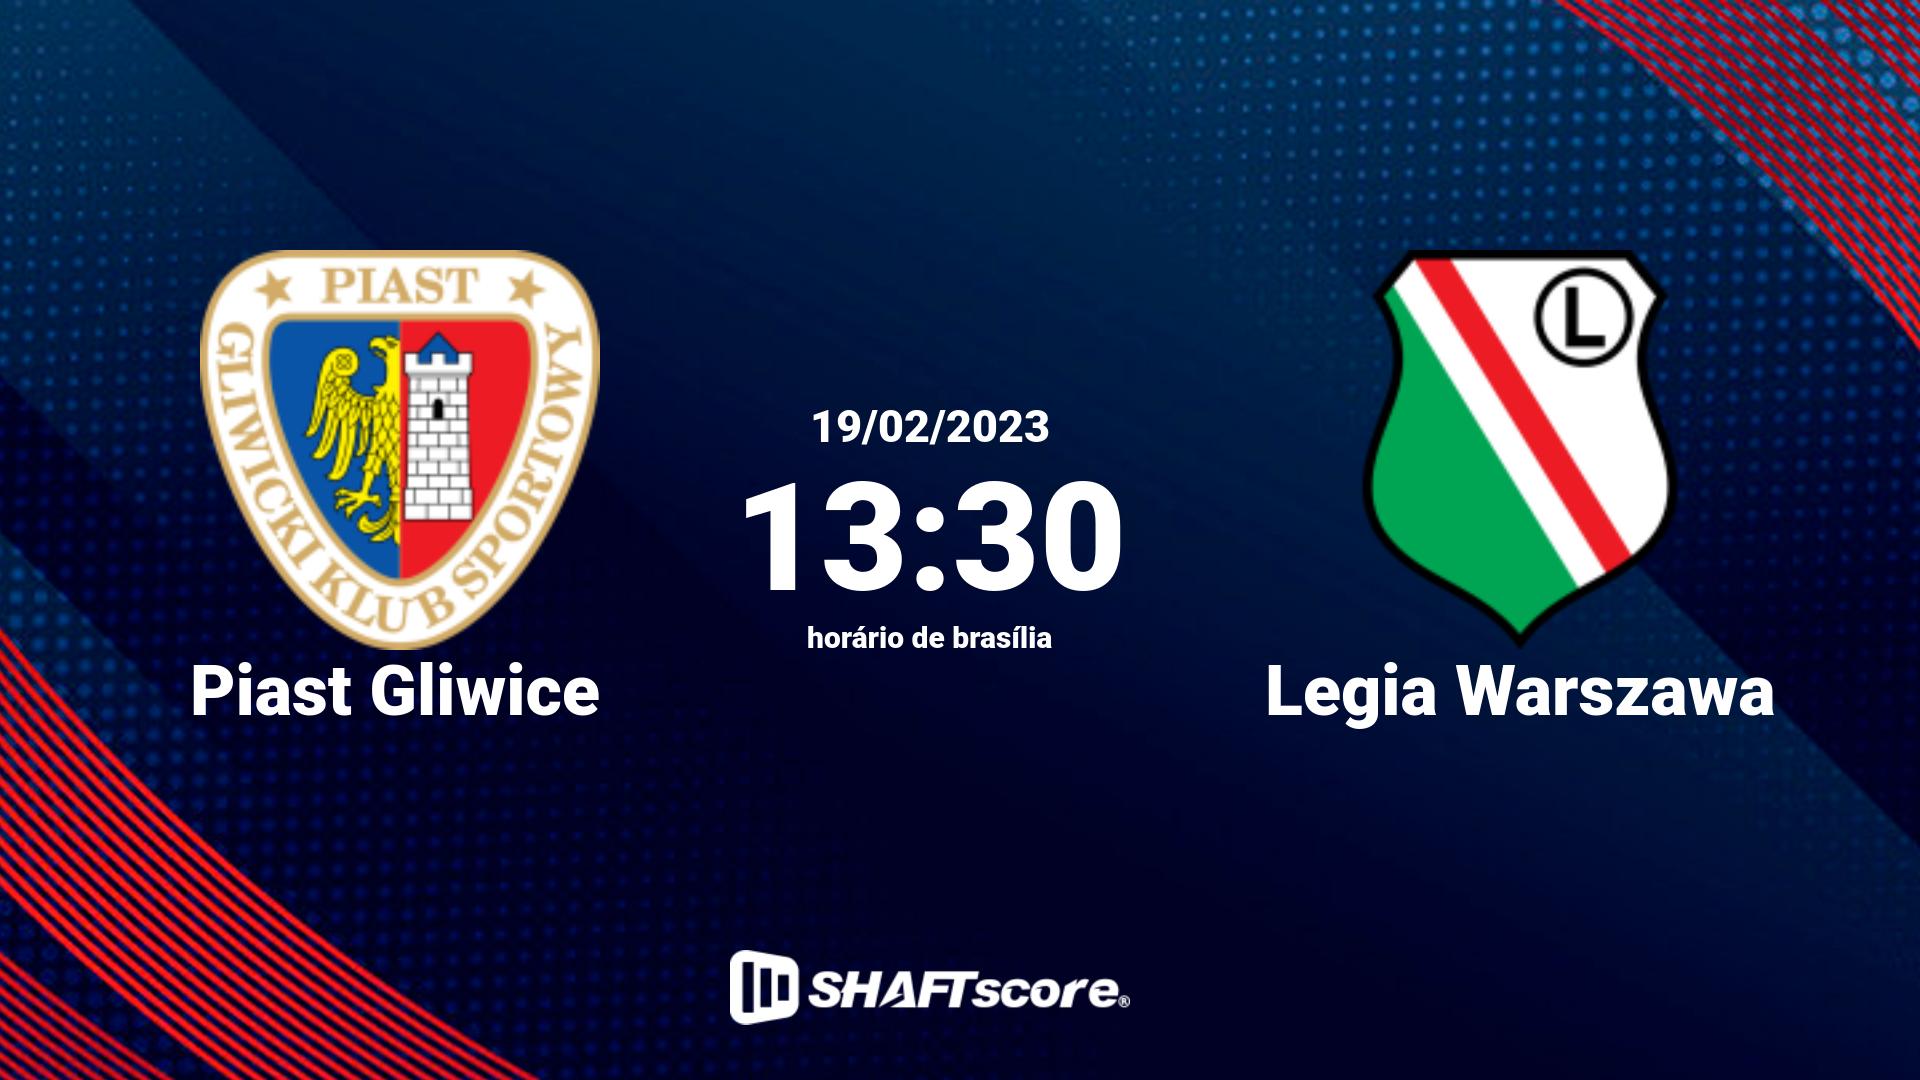 Estatísticas do jogo Piast Gliwice vs Legia Warszawa 19.02 13:30